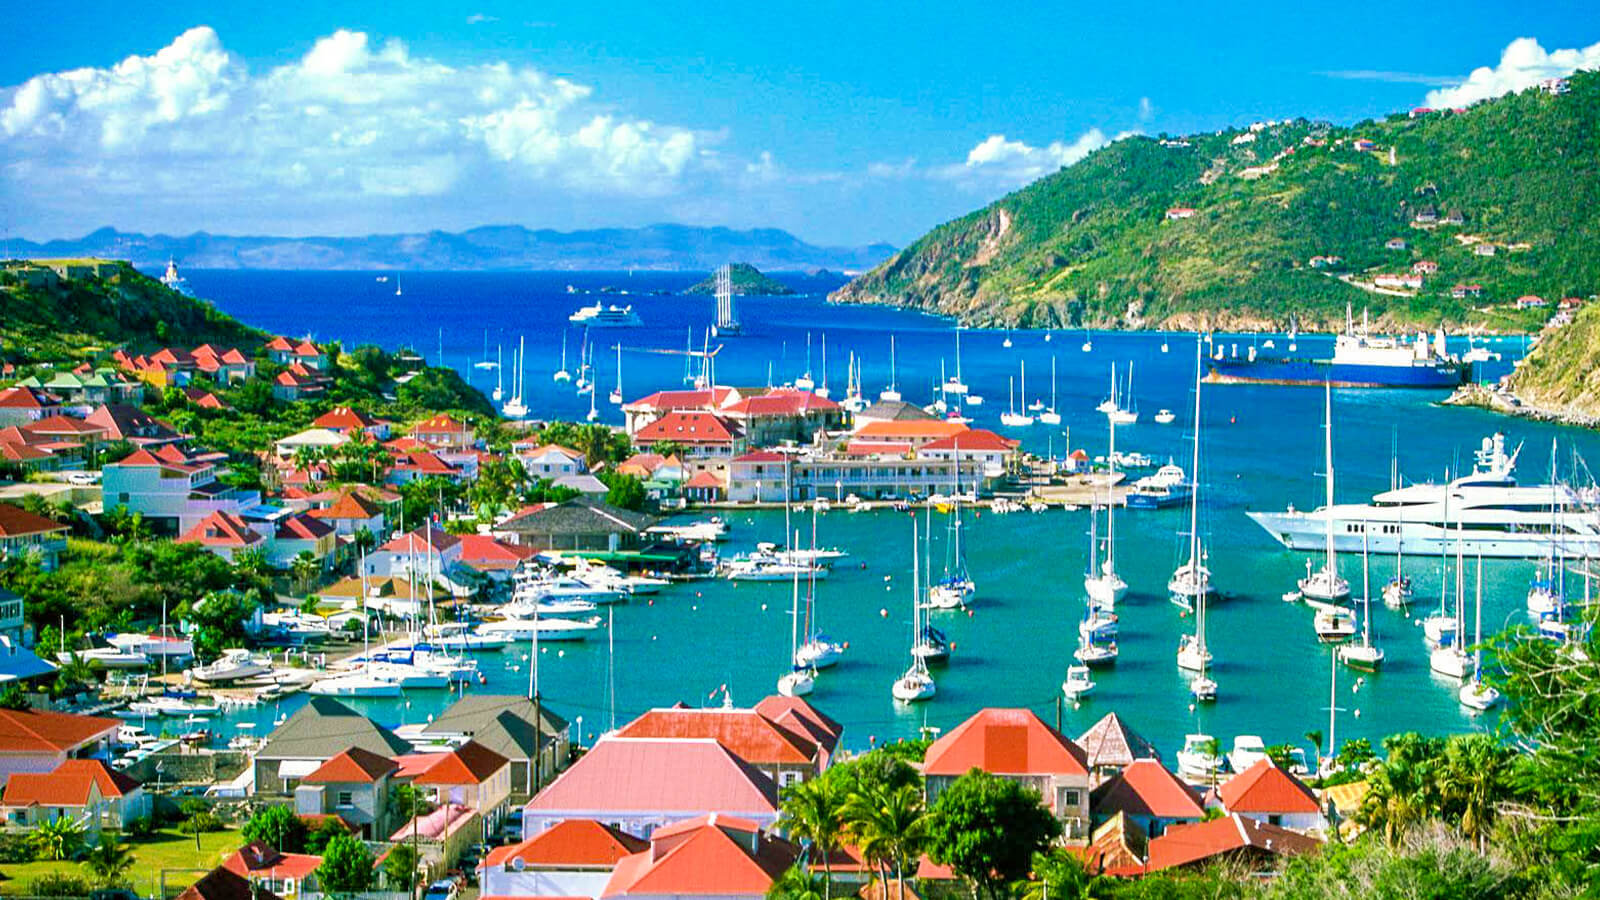 Image of St. Maarten